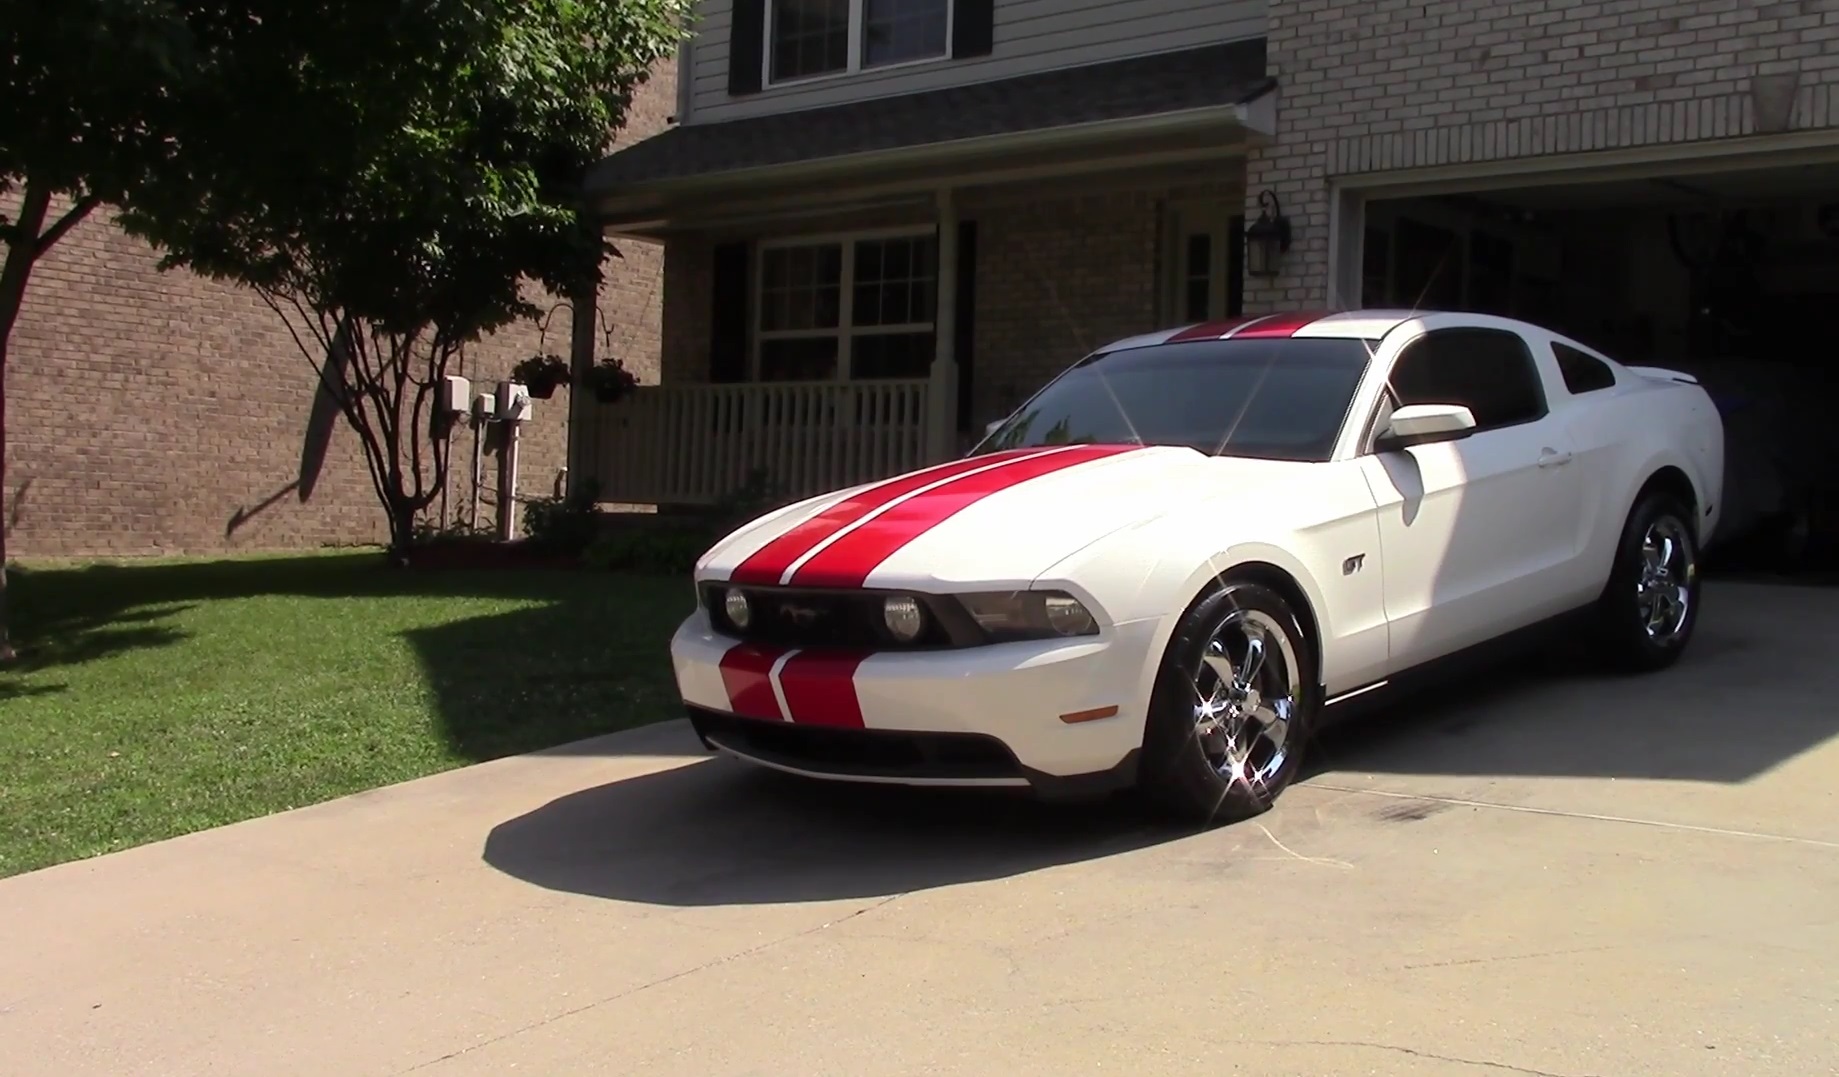 Video: 2010 Ford Mustang GT Full Walkthrough